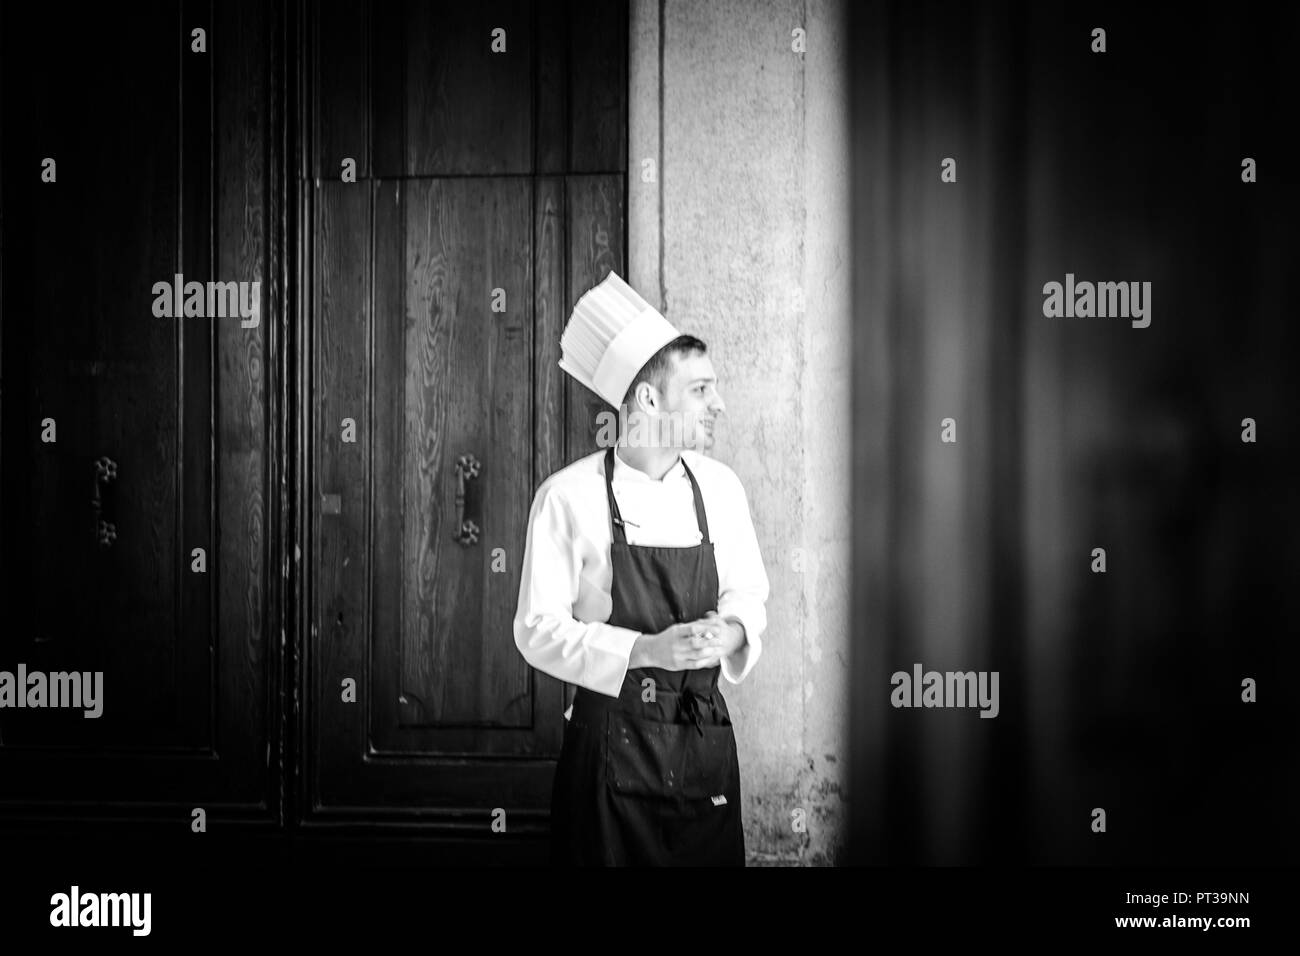 Chef, jeune homme avec chapeau de chef et d'un tablier, smiling, porte dans l'arrière-plan, photo en noir et blanc Banque D'Images